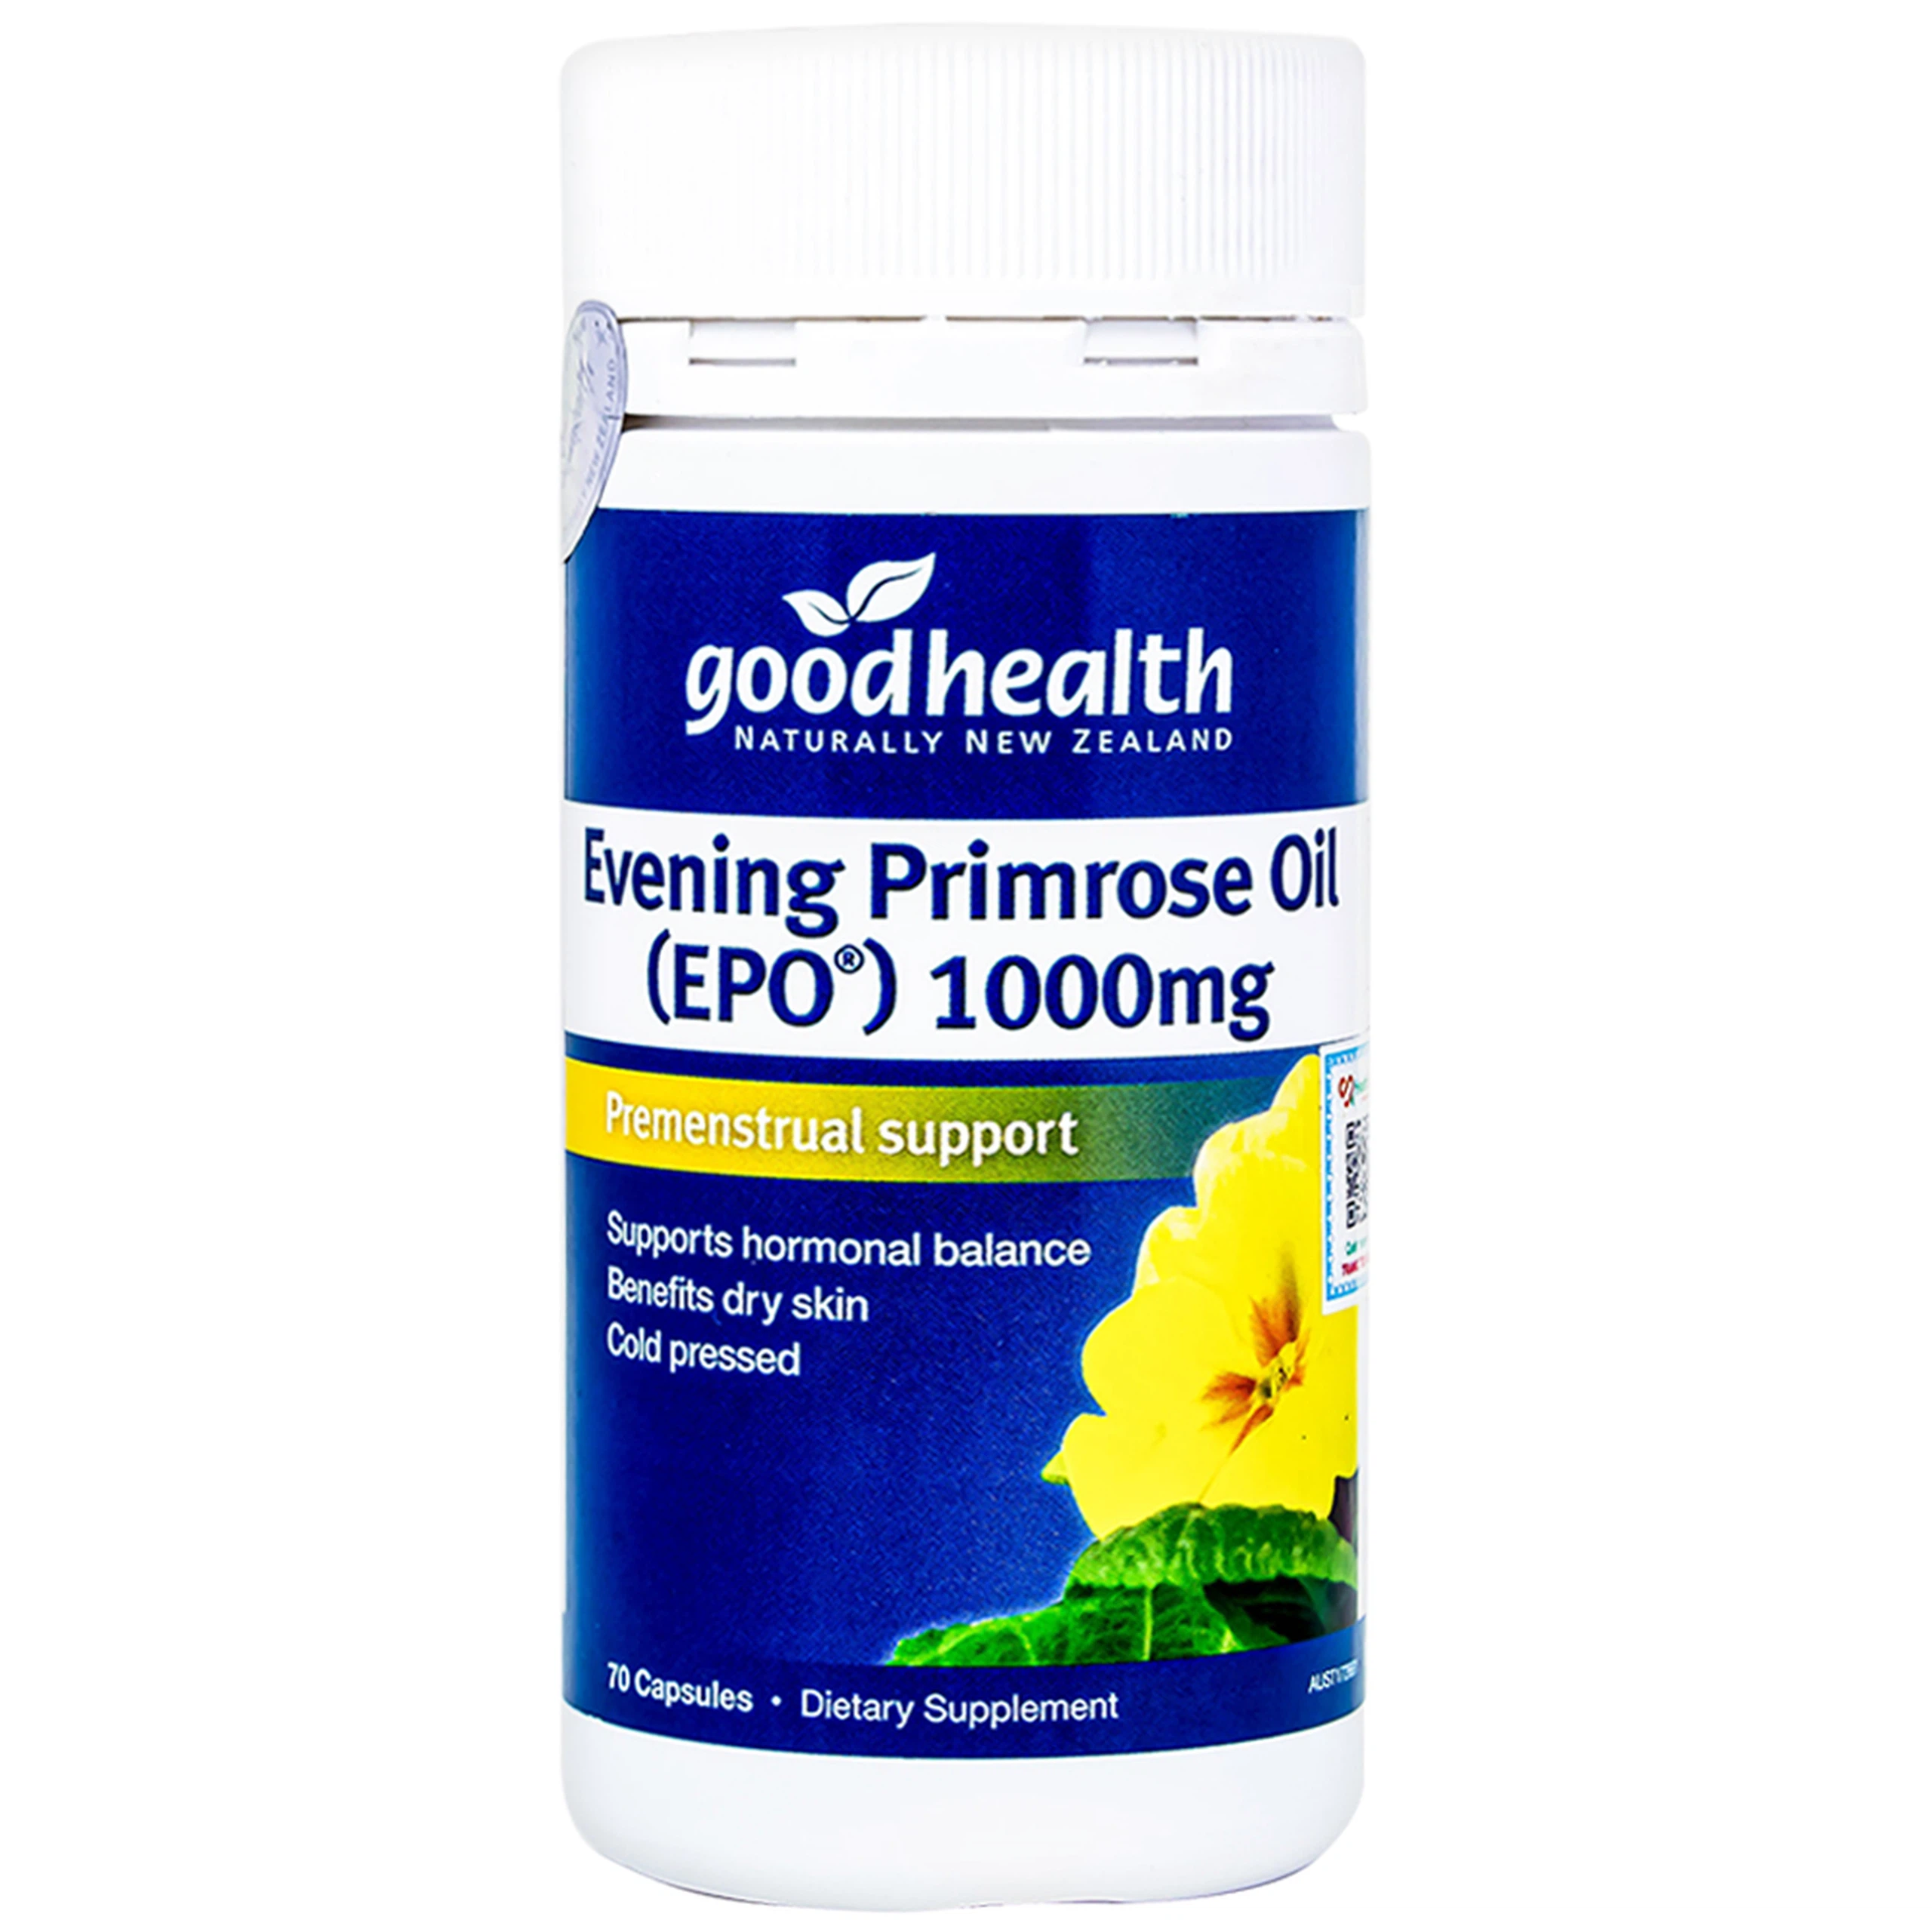 Viên uống Evening Primrose Oil (EPO) 1000mg Good Health cải thiện nội tiết tố nữ, làm đẹp da (70 viên)